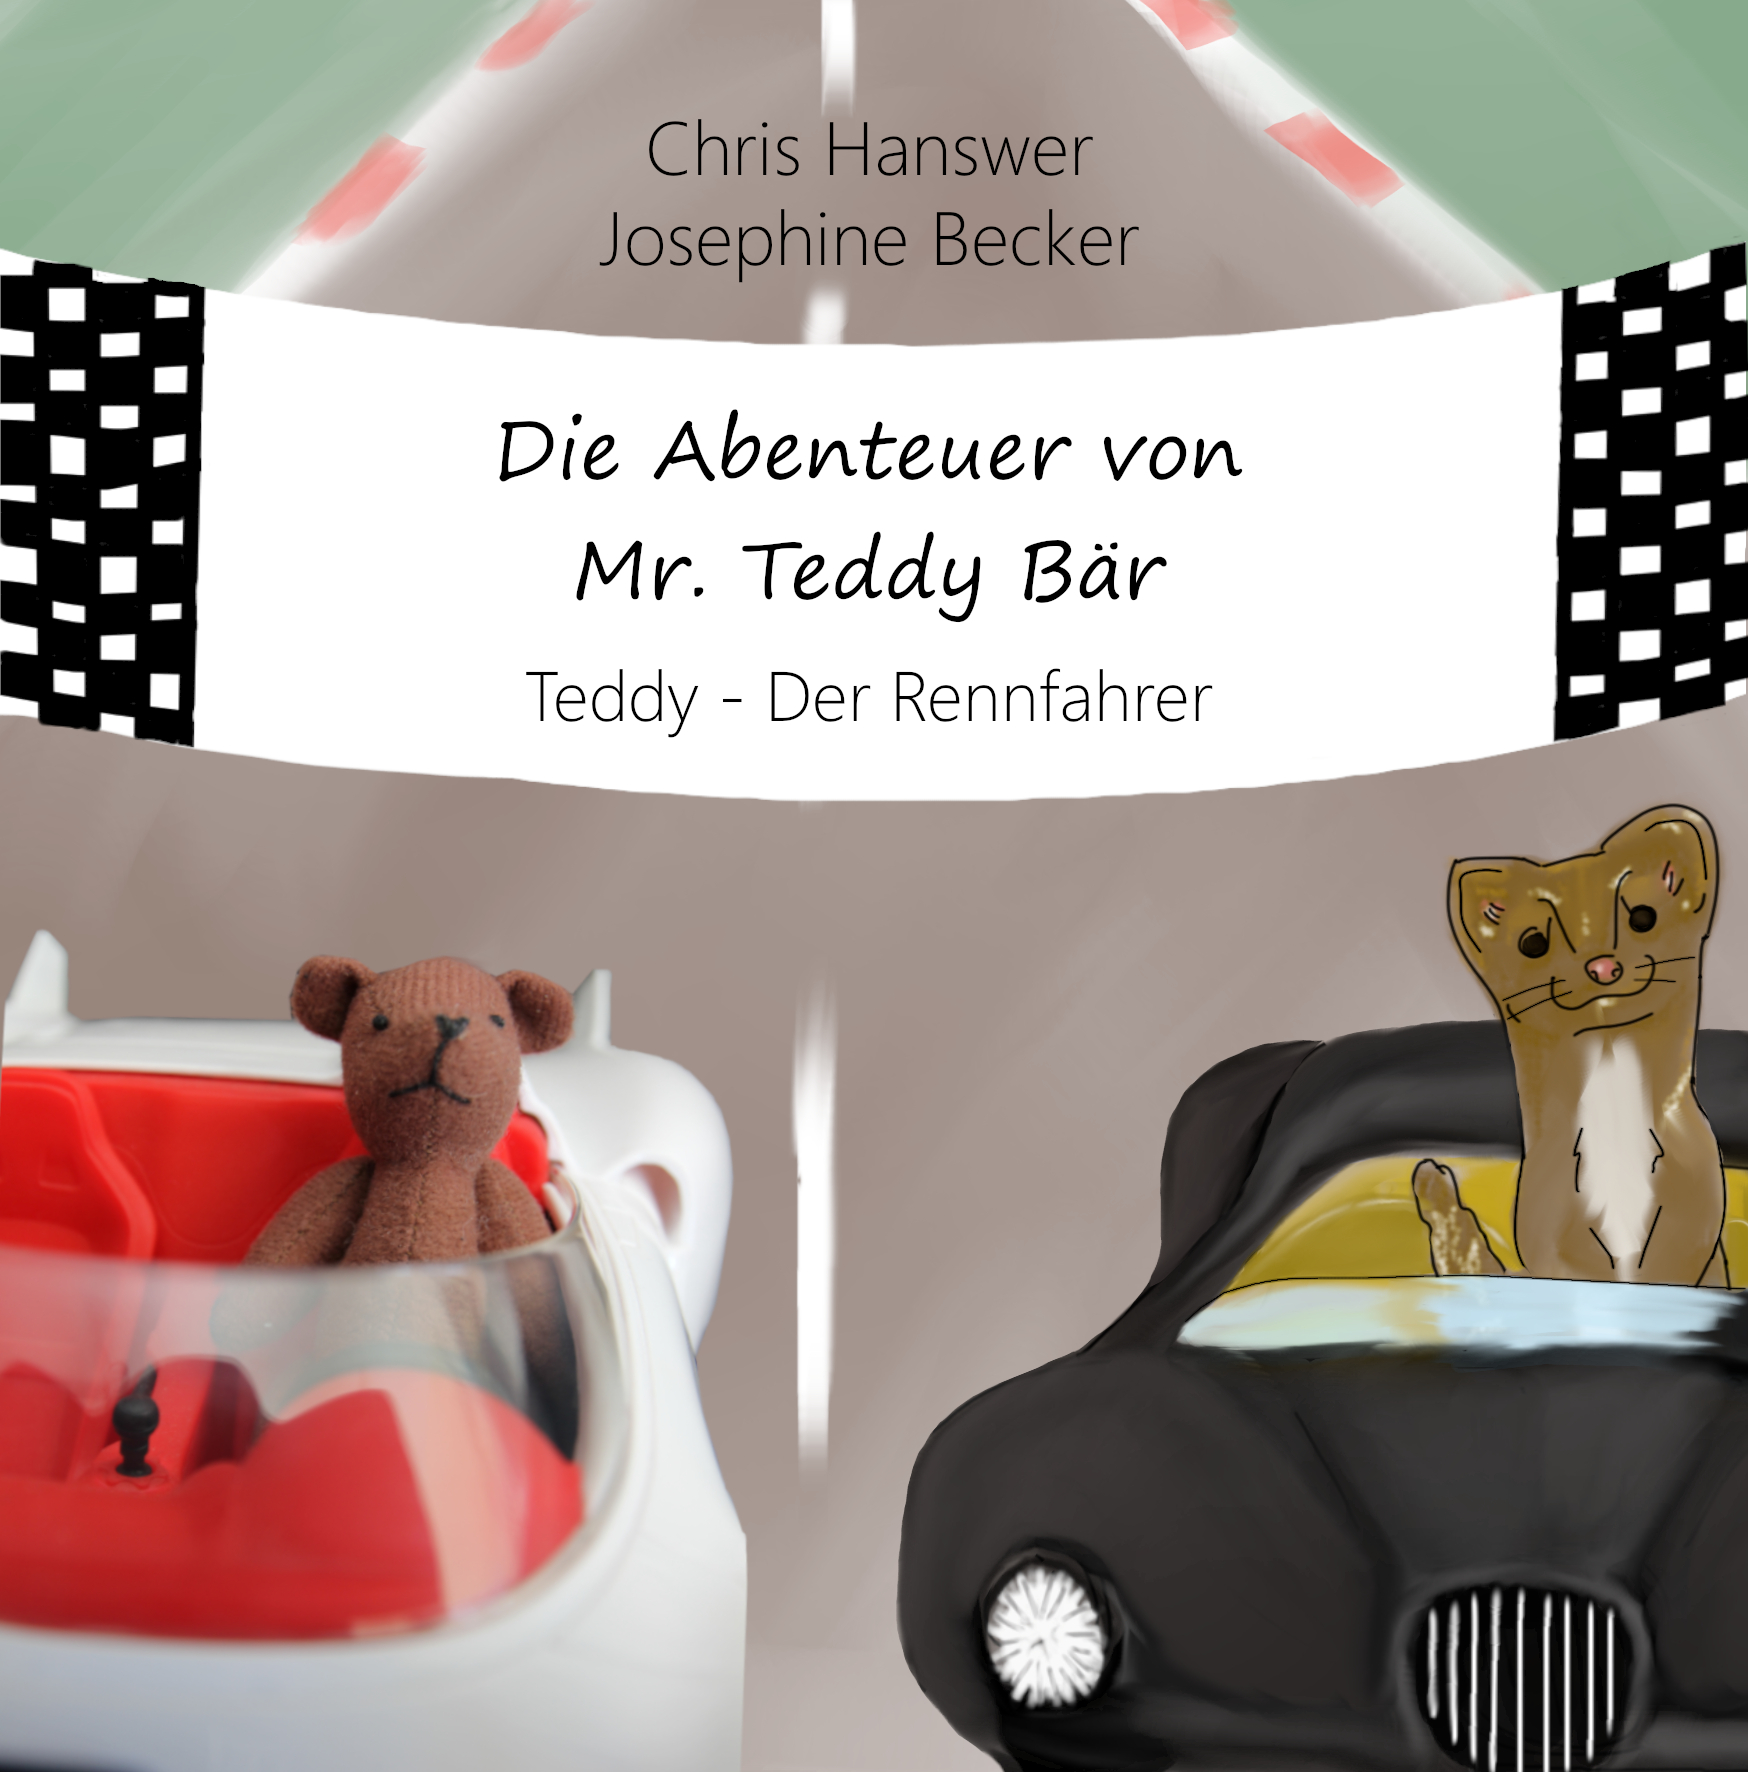 Die Abenteuer von Mr. Teddy Bär Profilbild